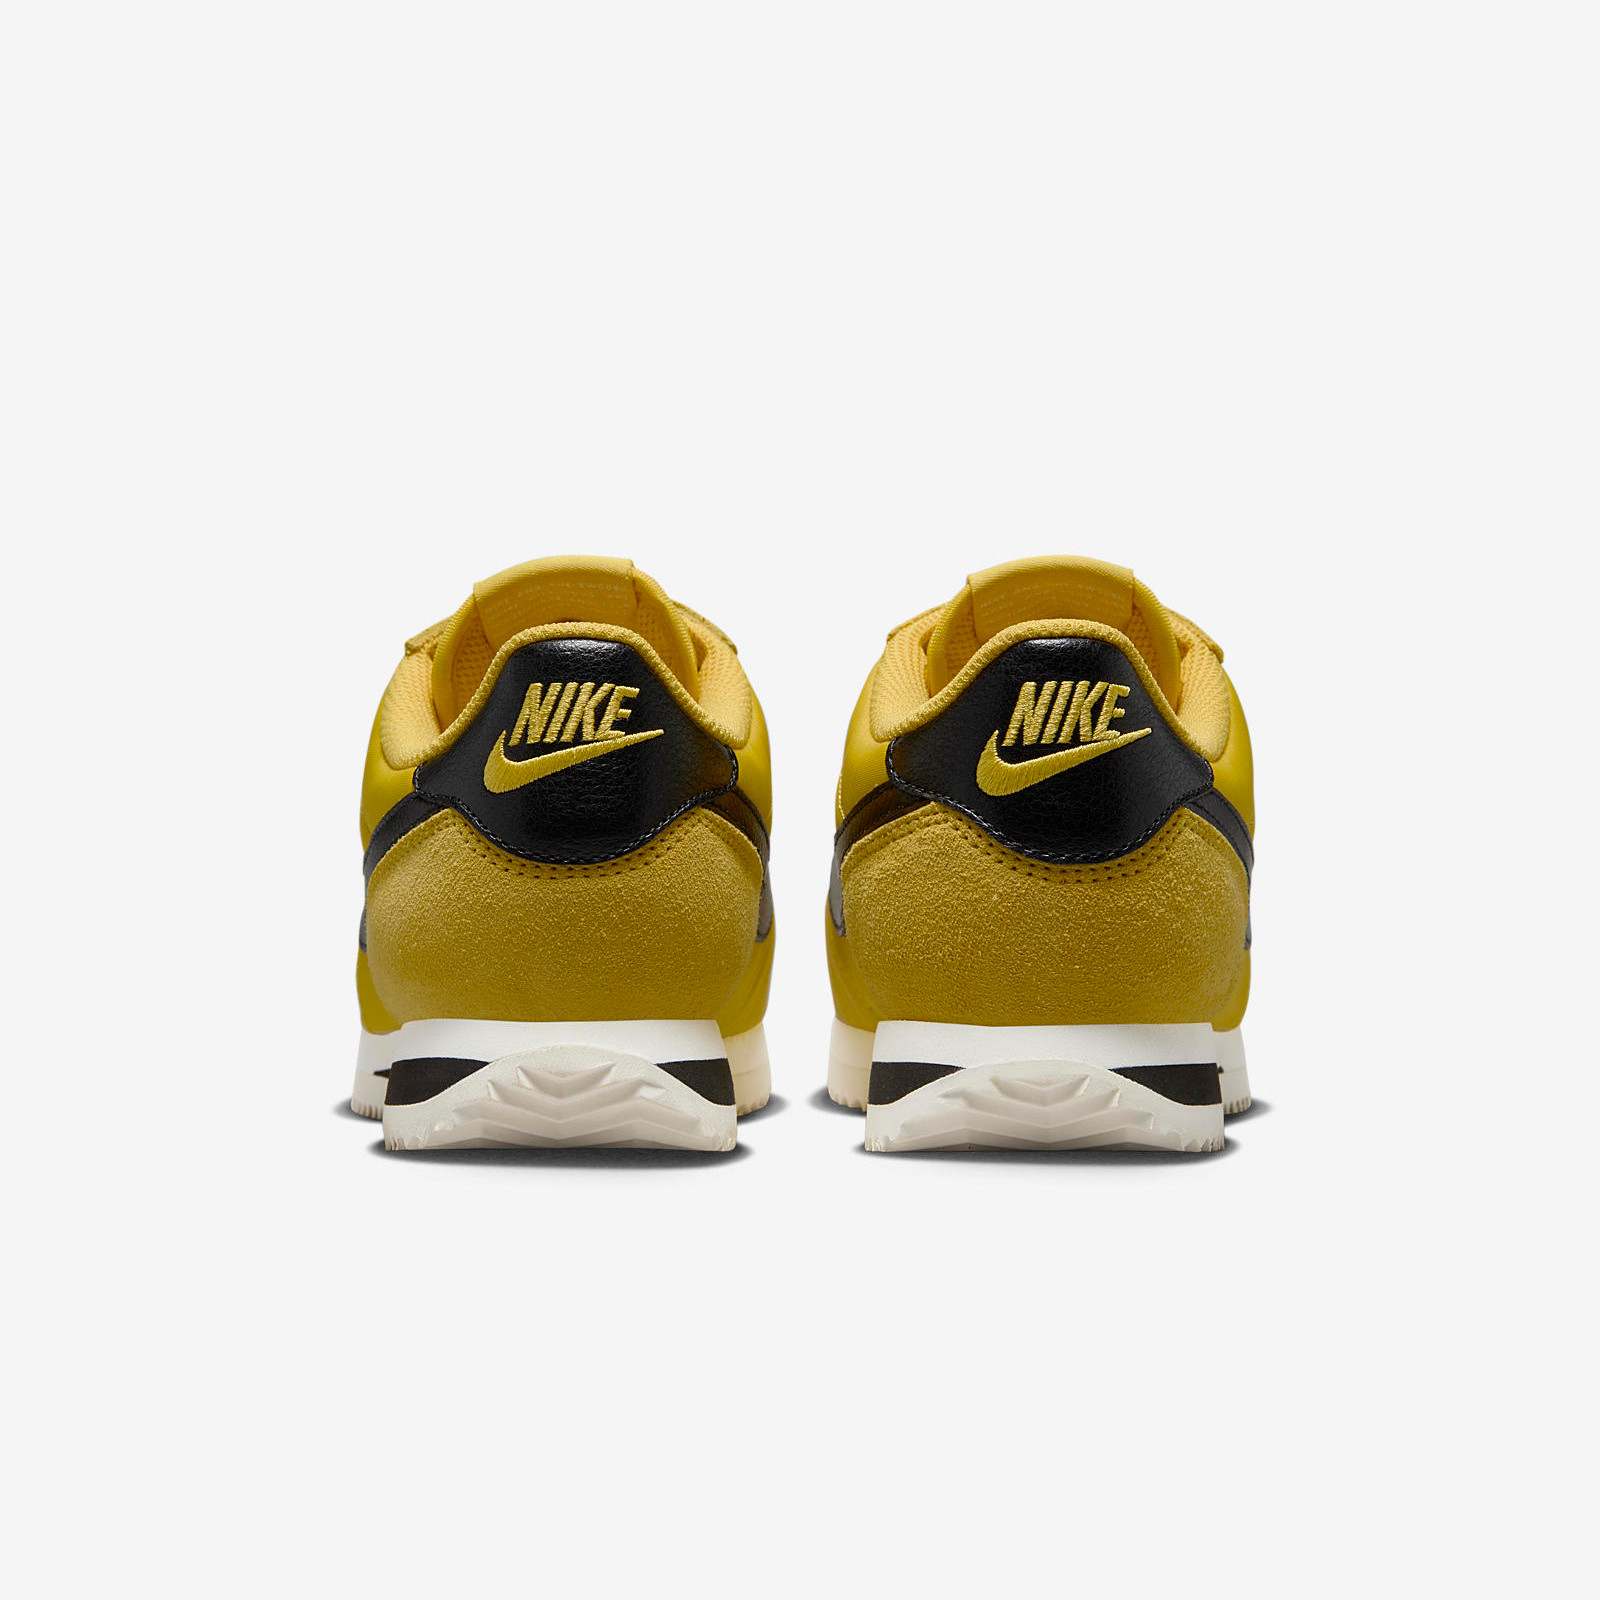 Nike Cortez
« Vivid Sulphur »